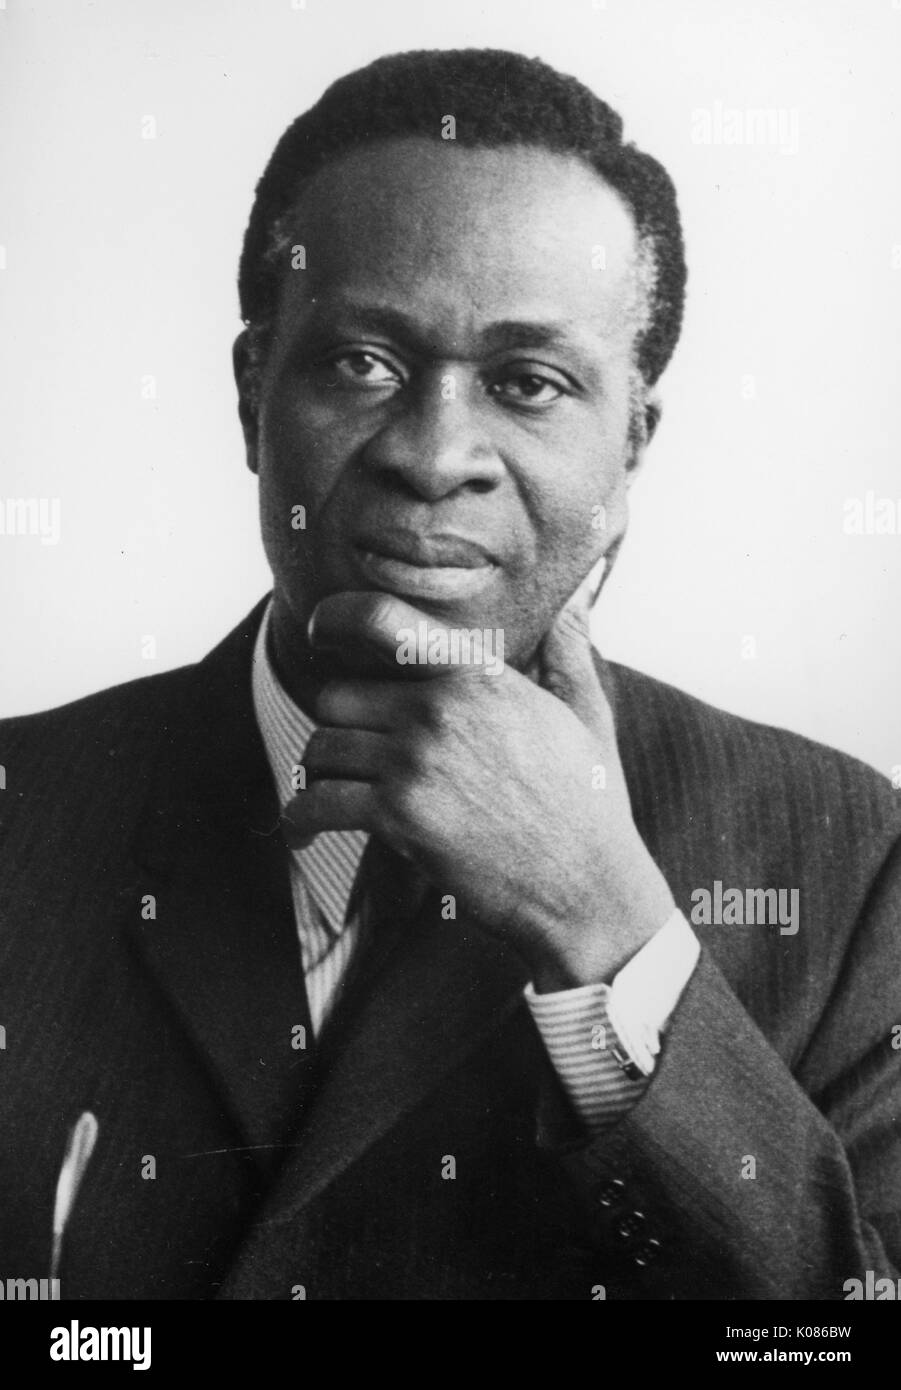 Kopf geschossen von Dr. Thomas Adeoye Lambo, nigerianische Gelehrter, Administrator und Psychiater, mit einem neutralen Ausdruck, seinen Kopf auf seinen linken Arm, in Anzug Jacke, Hemd, Krawatte und Manschettenknöpfe, 1973. Stockfoto